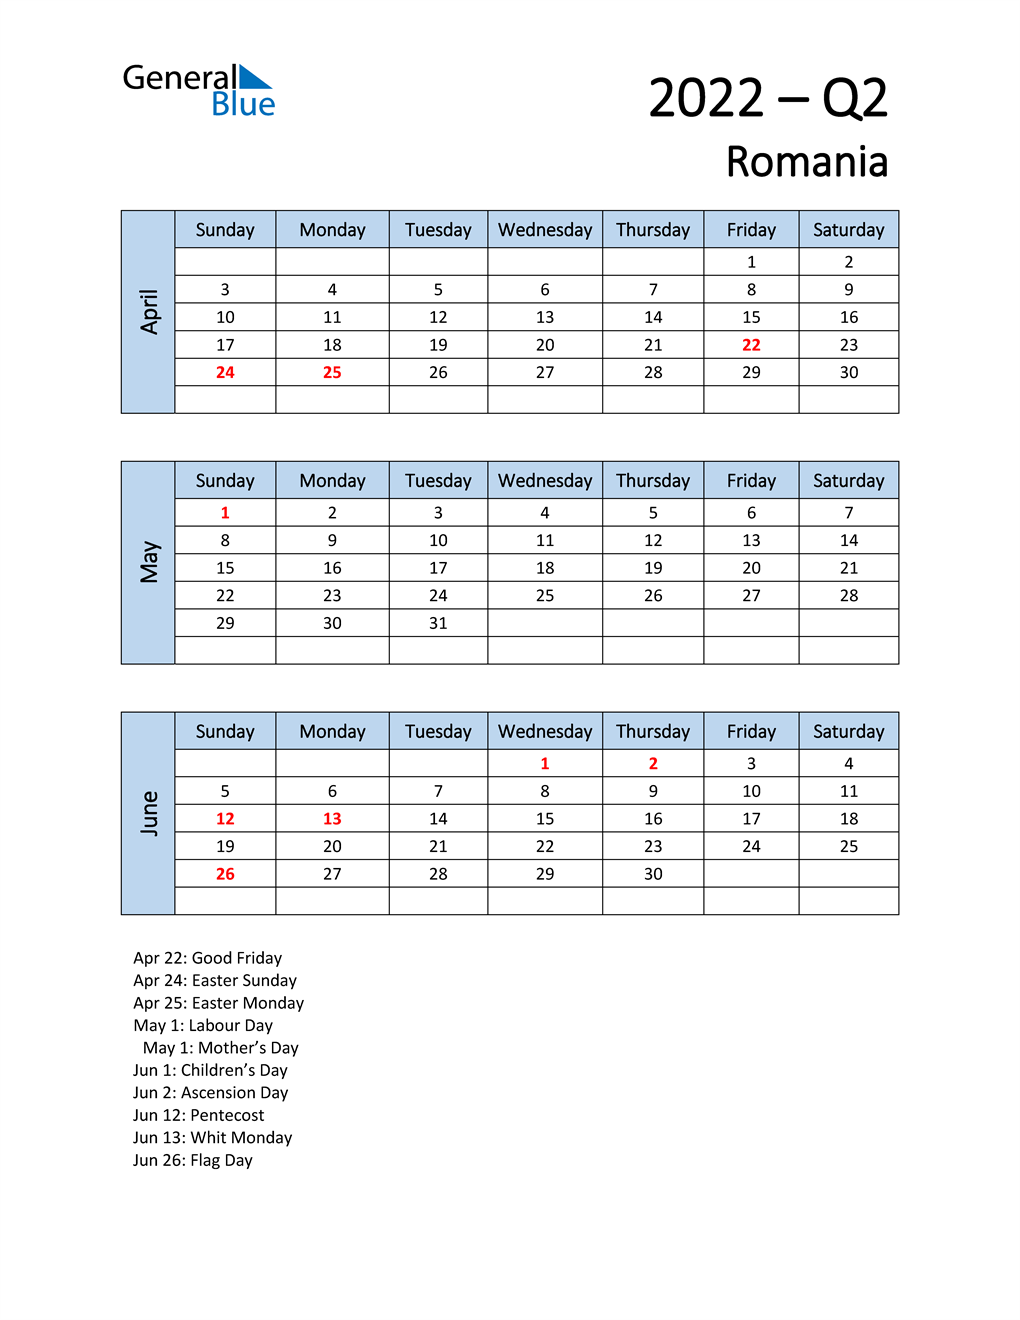  Free Q2 2022 Calendar for Romania